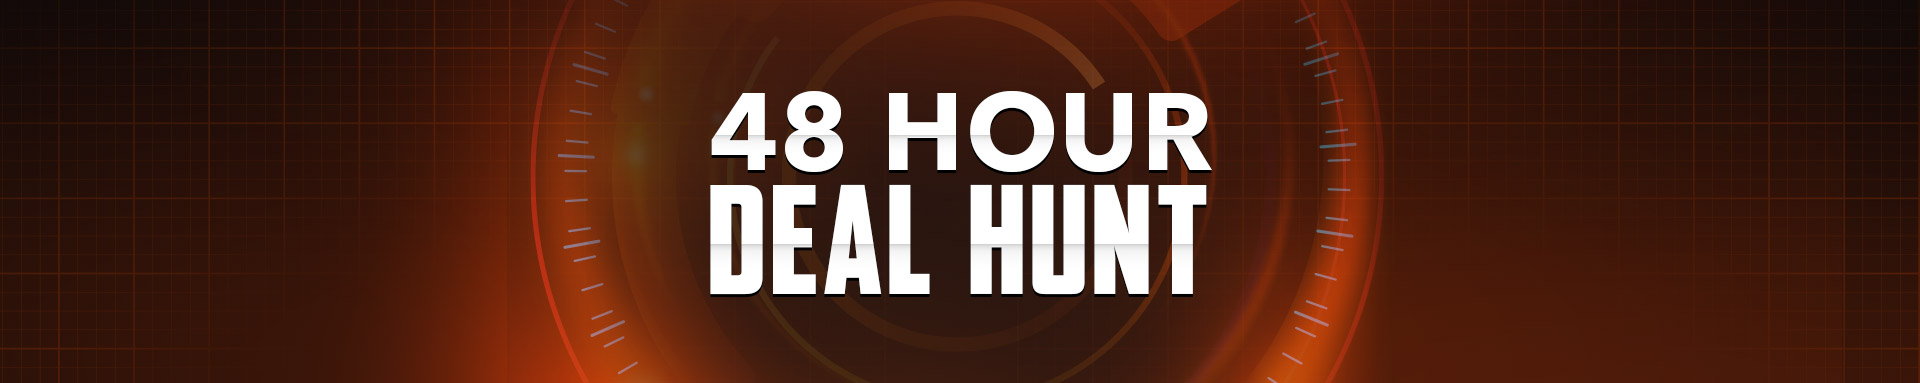 48 hour deal hunt